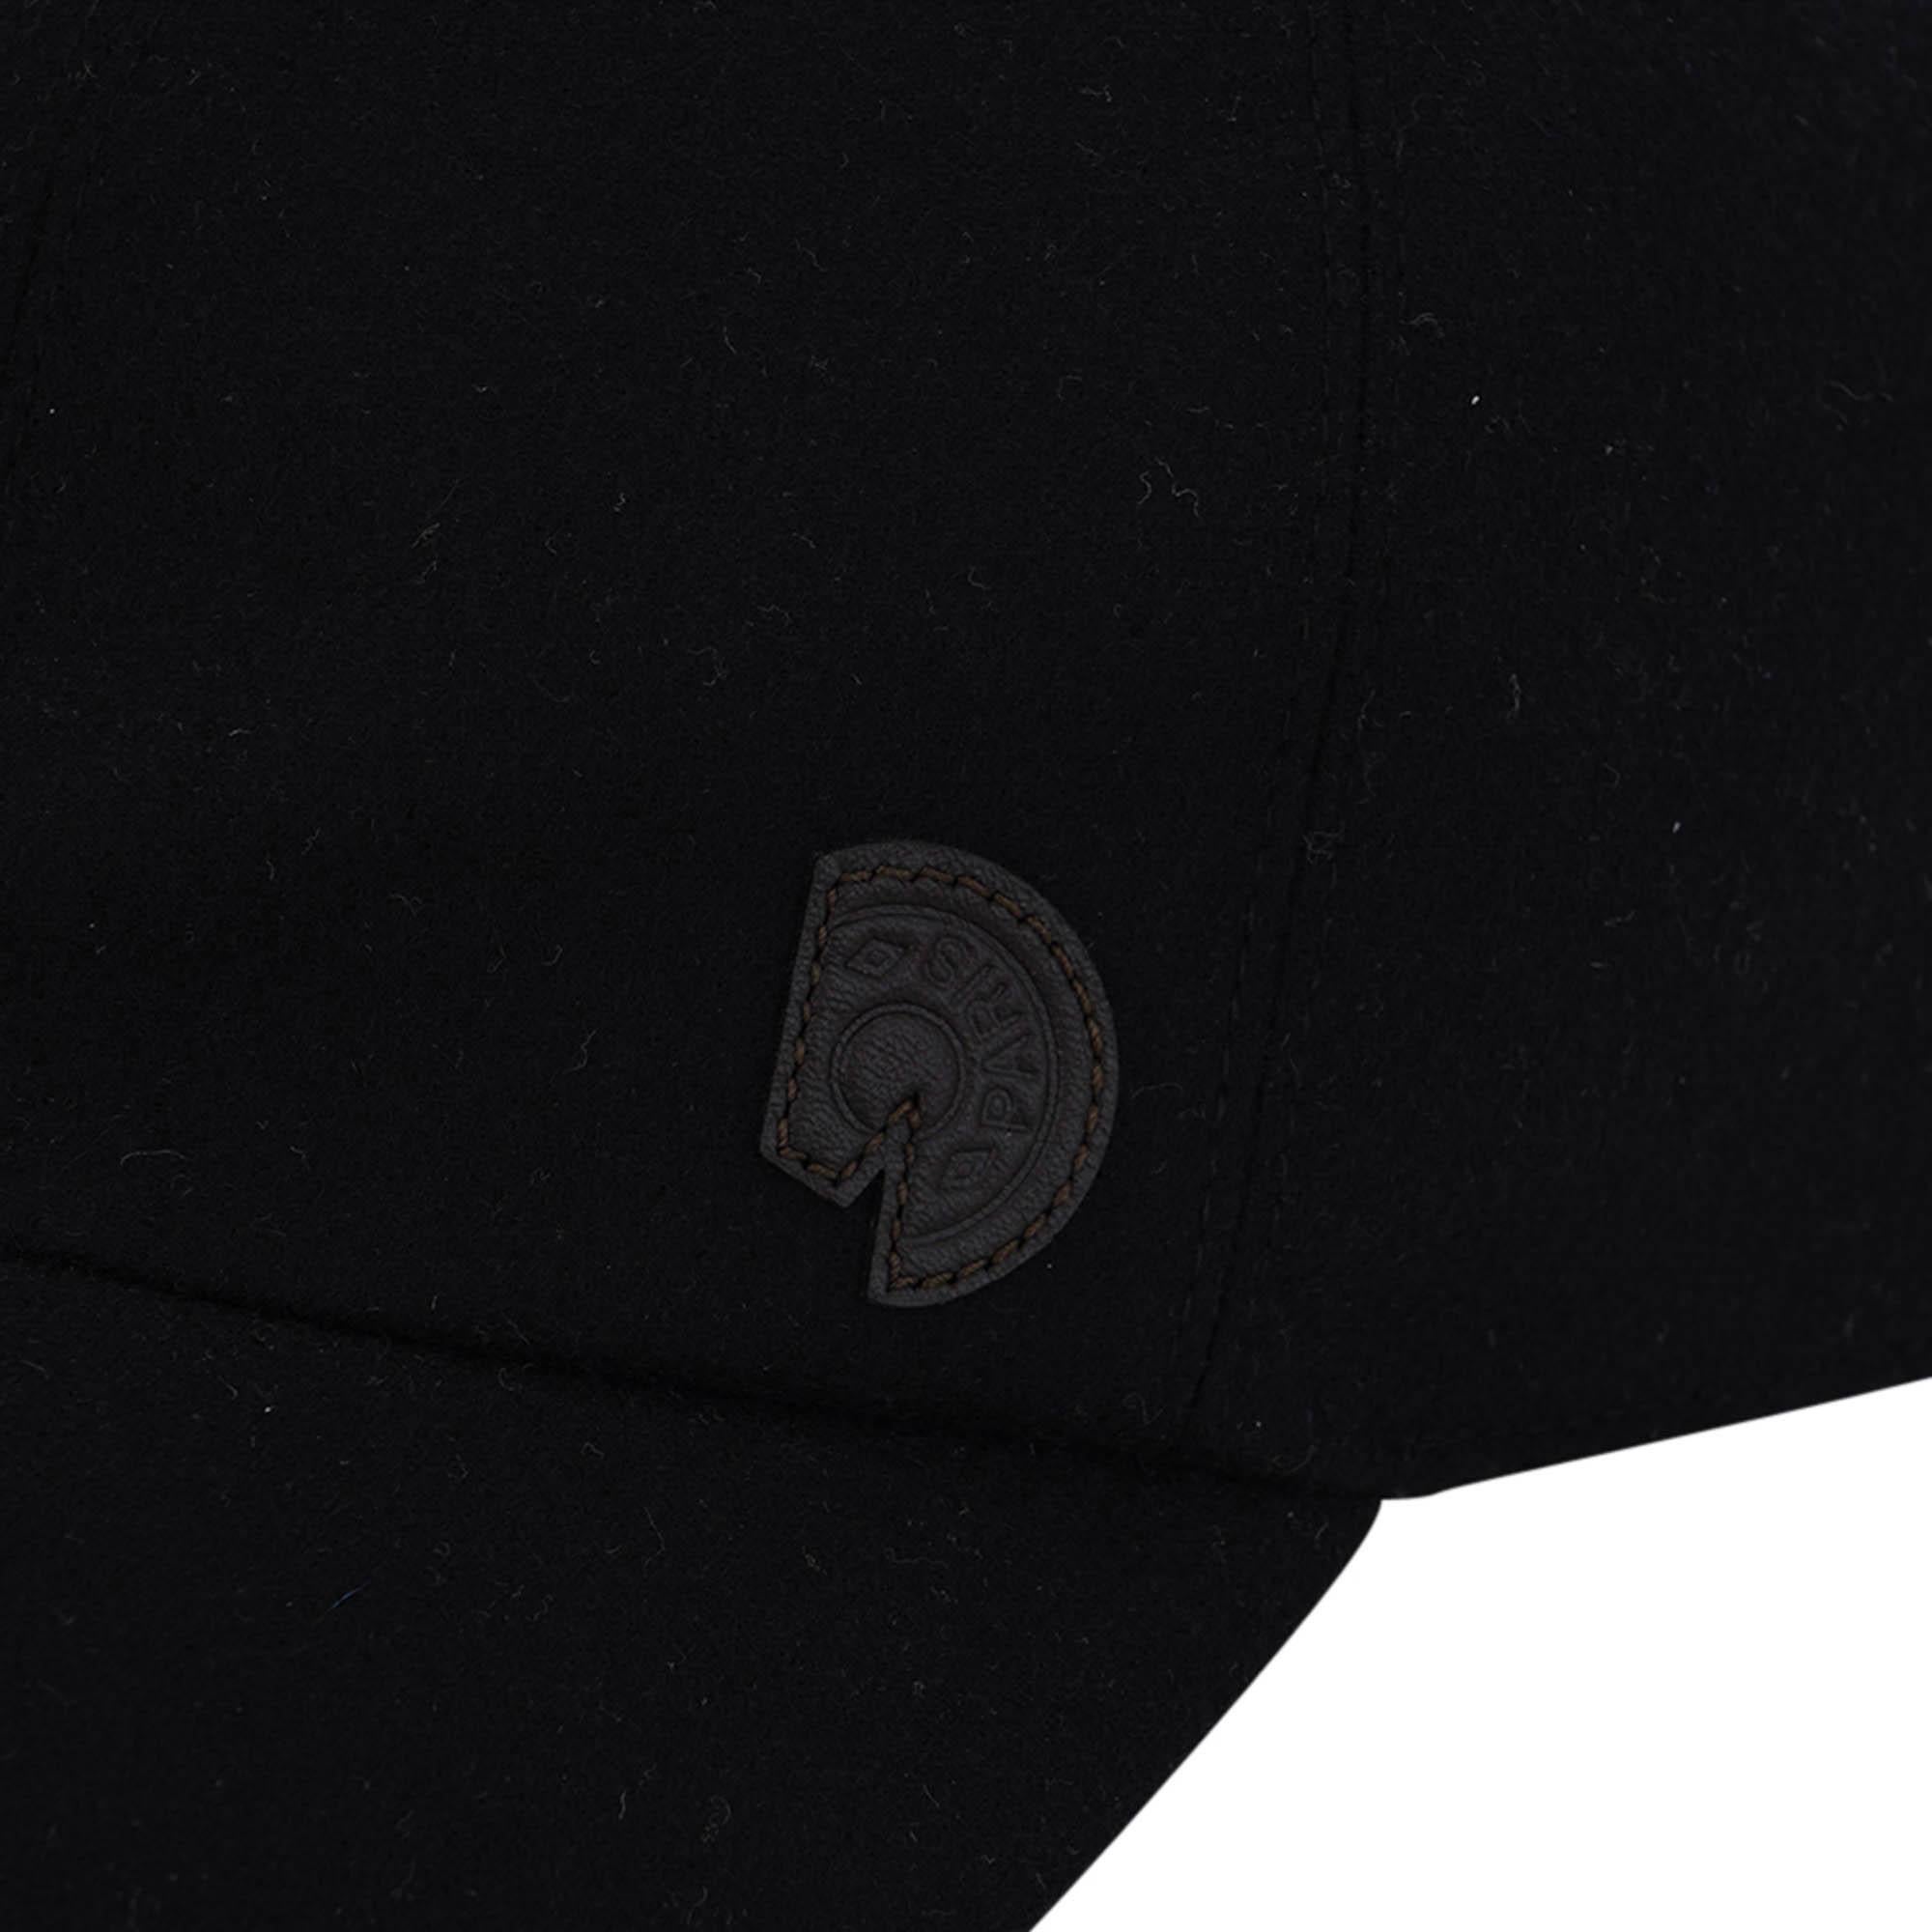 Mightychic bietet eine Hermes Riley Clou Carrousel Cap in der Farbe Schwarz an.
Swift Kalbsleder Clou Karussell auf der Seite.
CAP aus Wollflanell.
Interieur gewebtes Abzeichen Cheval de Fete von Jan Bajtlik.
Verstelllasche mit zwei Palladium